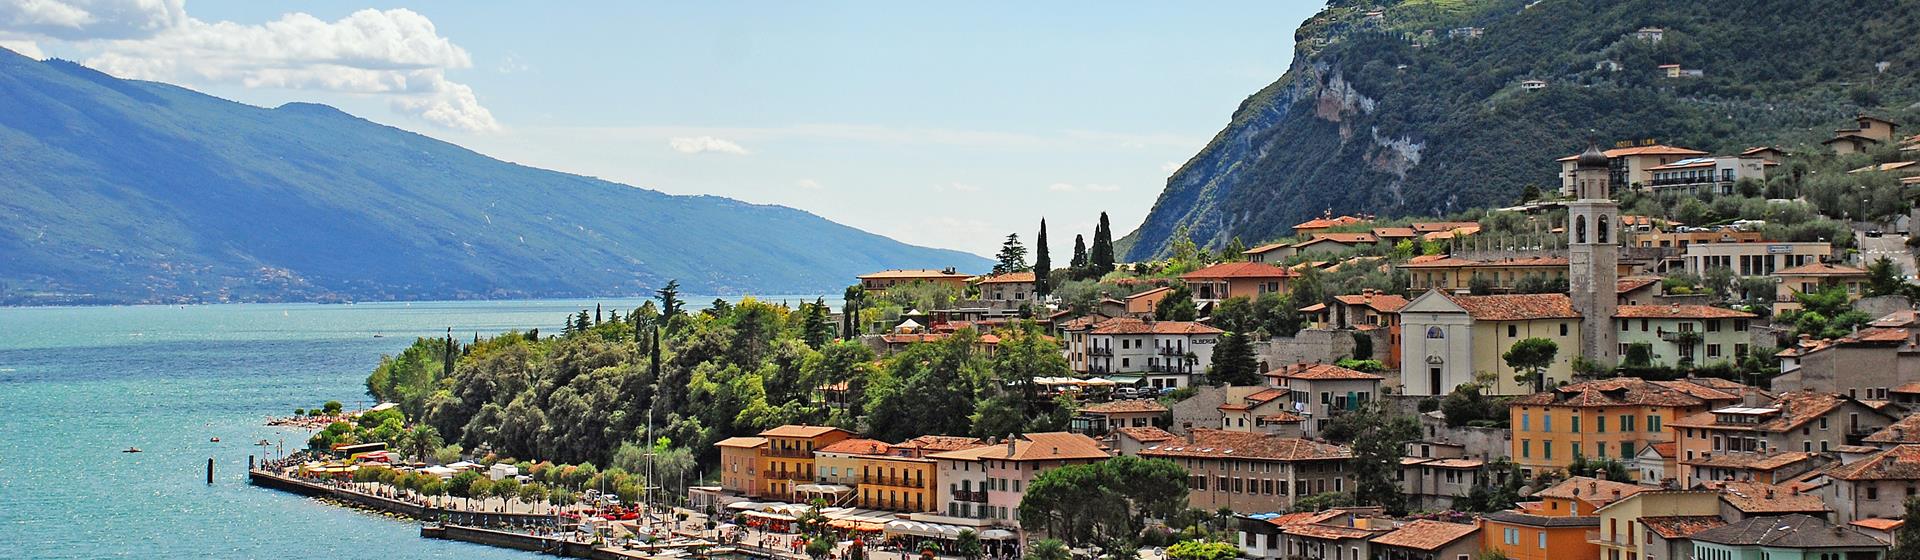 Holidays to Lake Garda